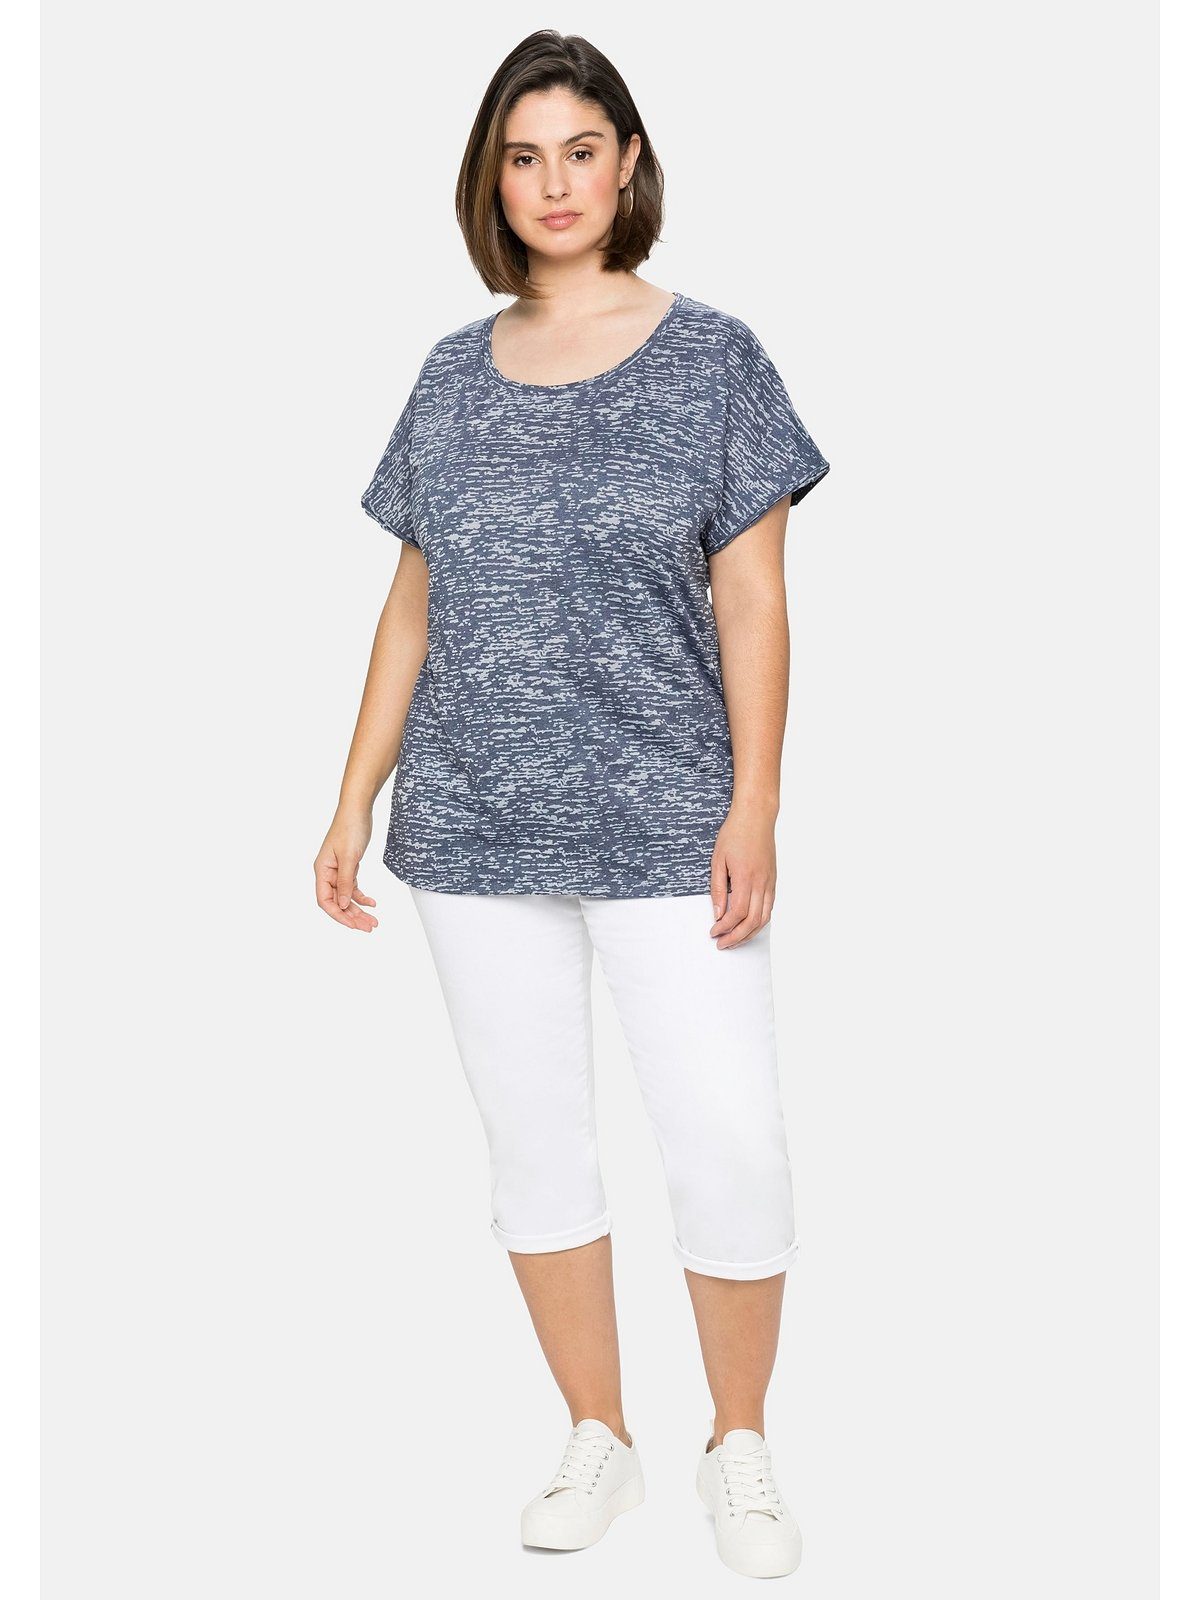 T-Shirt leicht mit Ausbrennermuster, Große transparent marine Sheego Größen